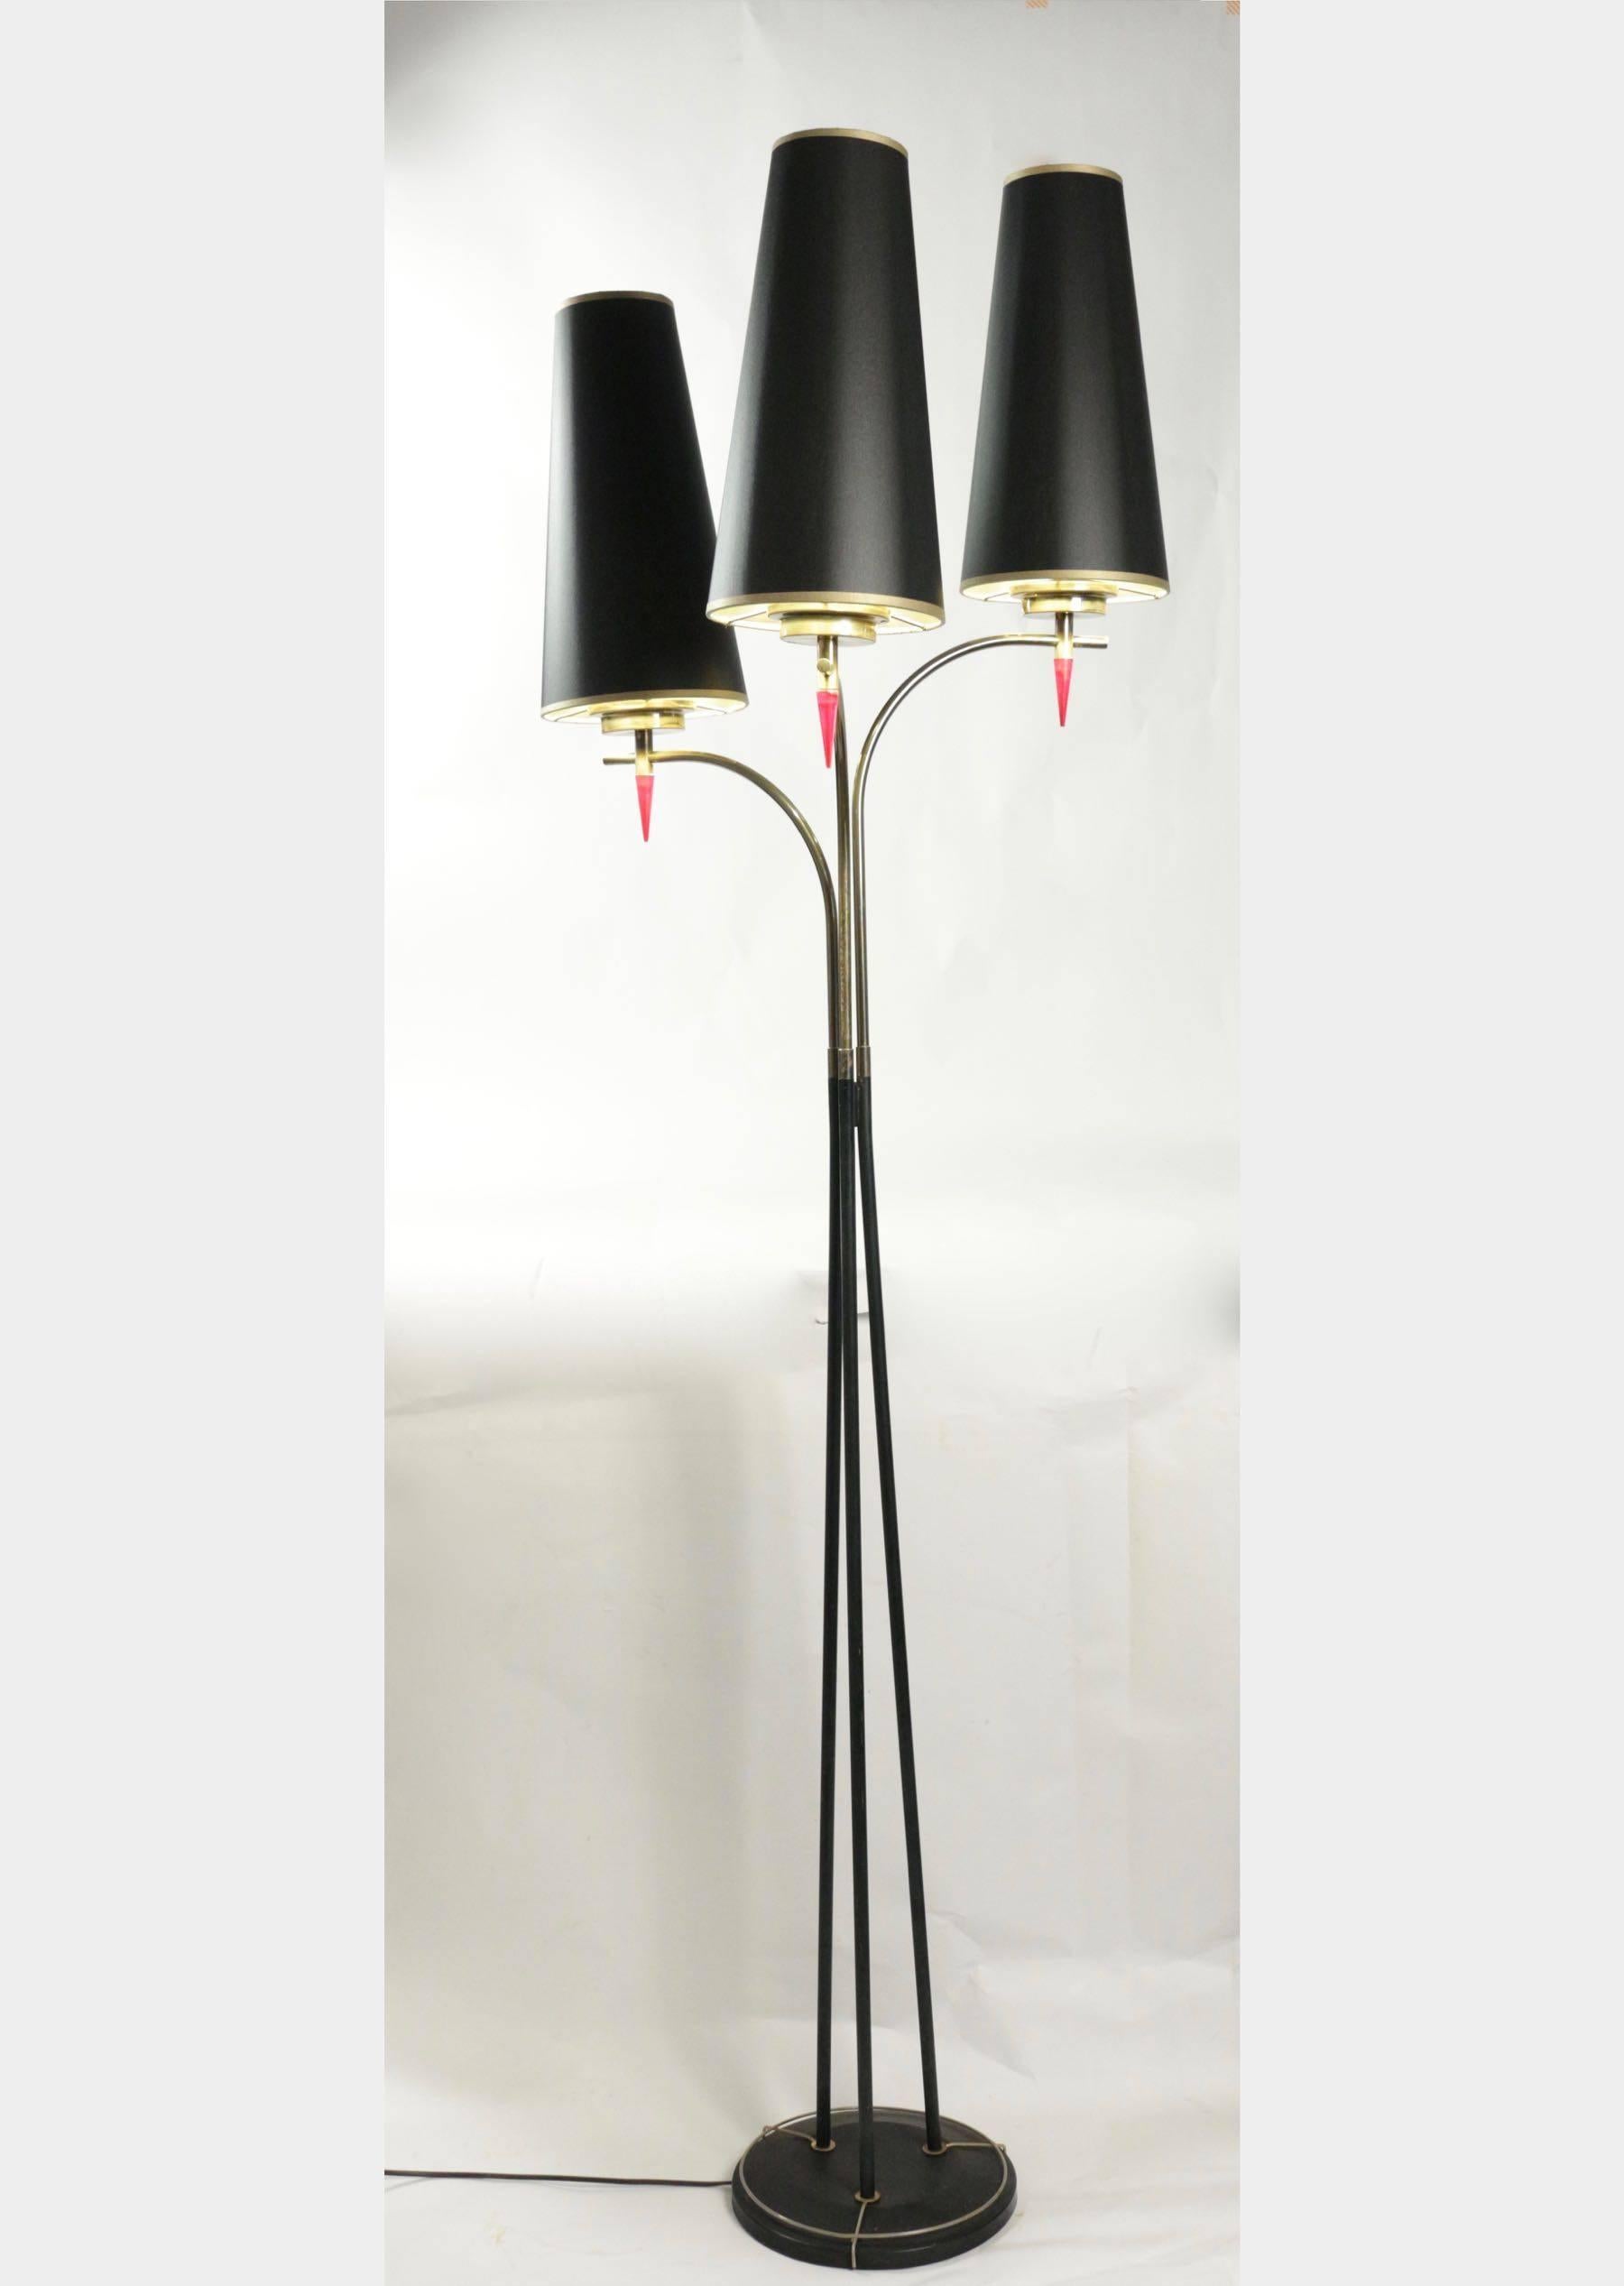 Stehende Stehlampe aus den 1960er Jahren in Metallfarbe und Messing. Drei Lichter.
   